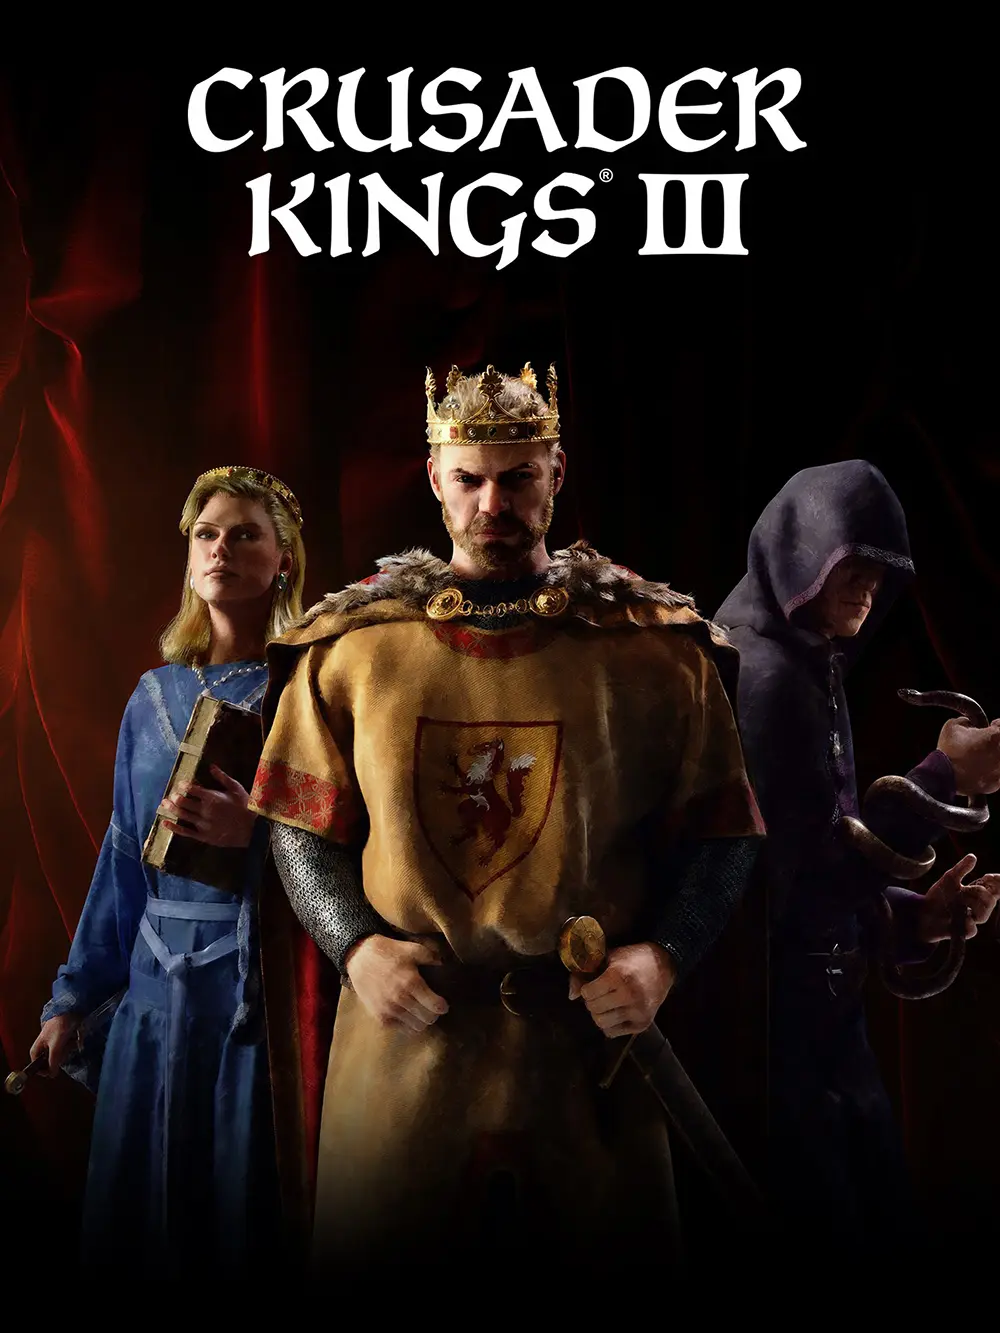 Crusader Kings III (EU) (PC / Mac / Linux) - Steam - Digital Code